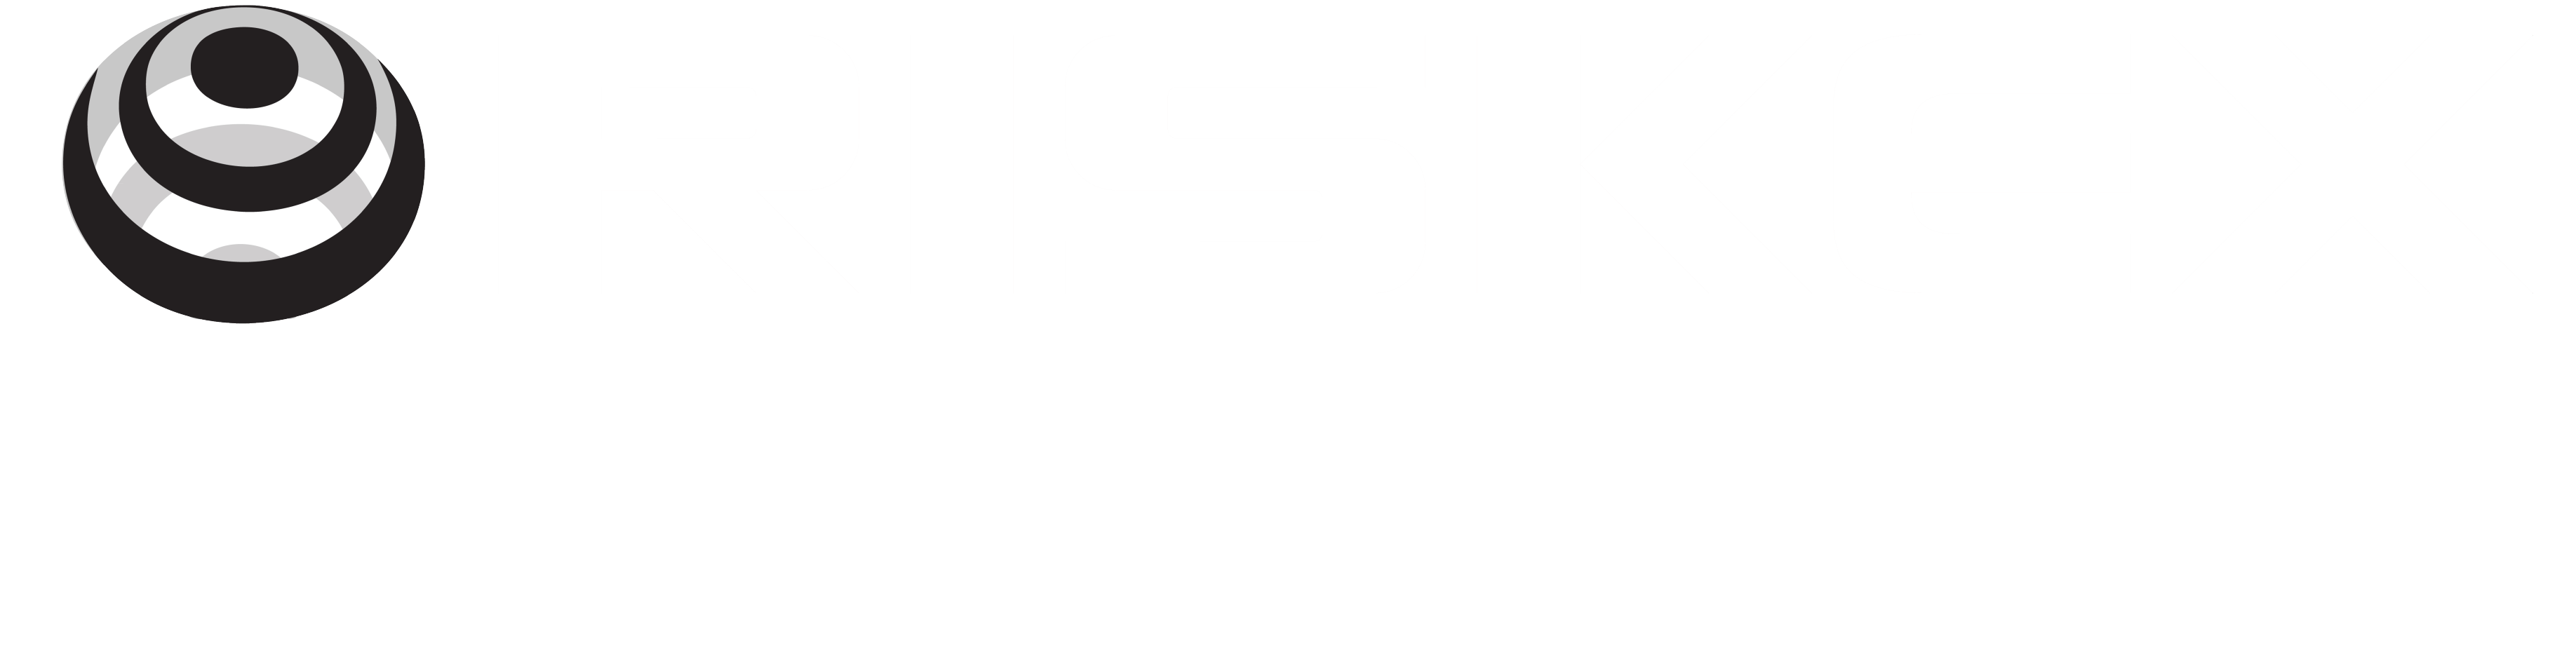 Riskex Roundup white logo